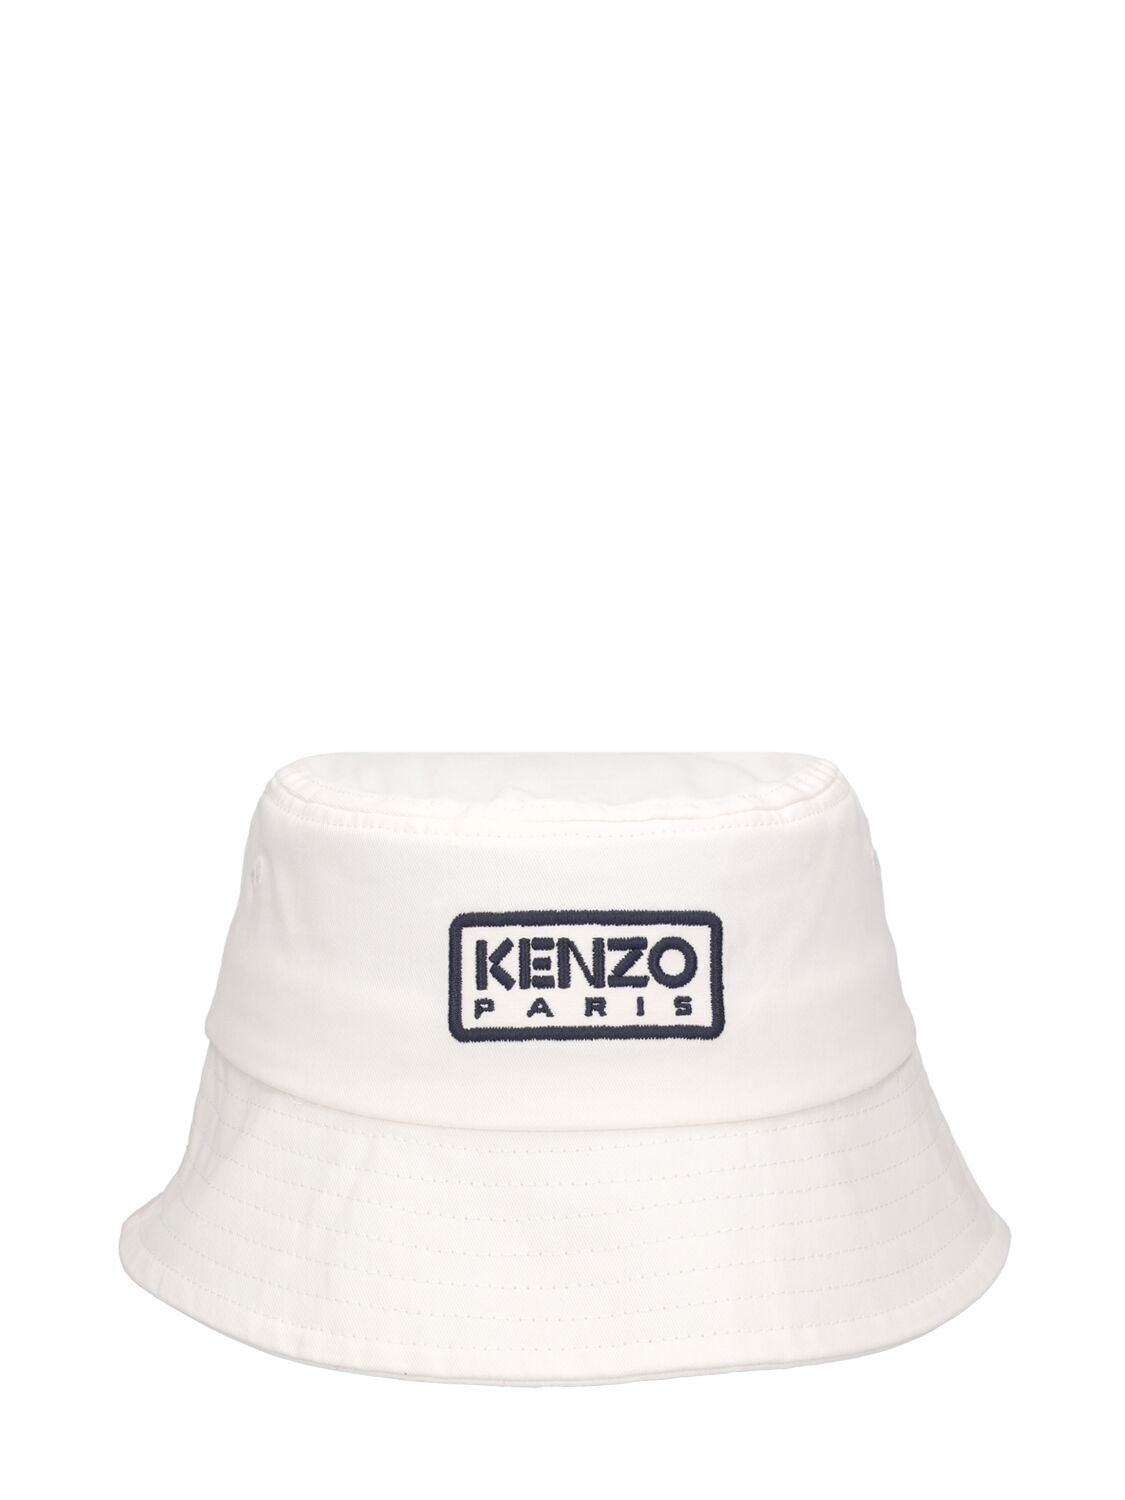 Kenzo Kids' Cotton Twill Bucket Hat In White